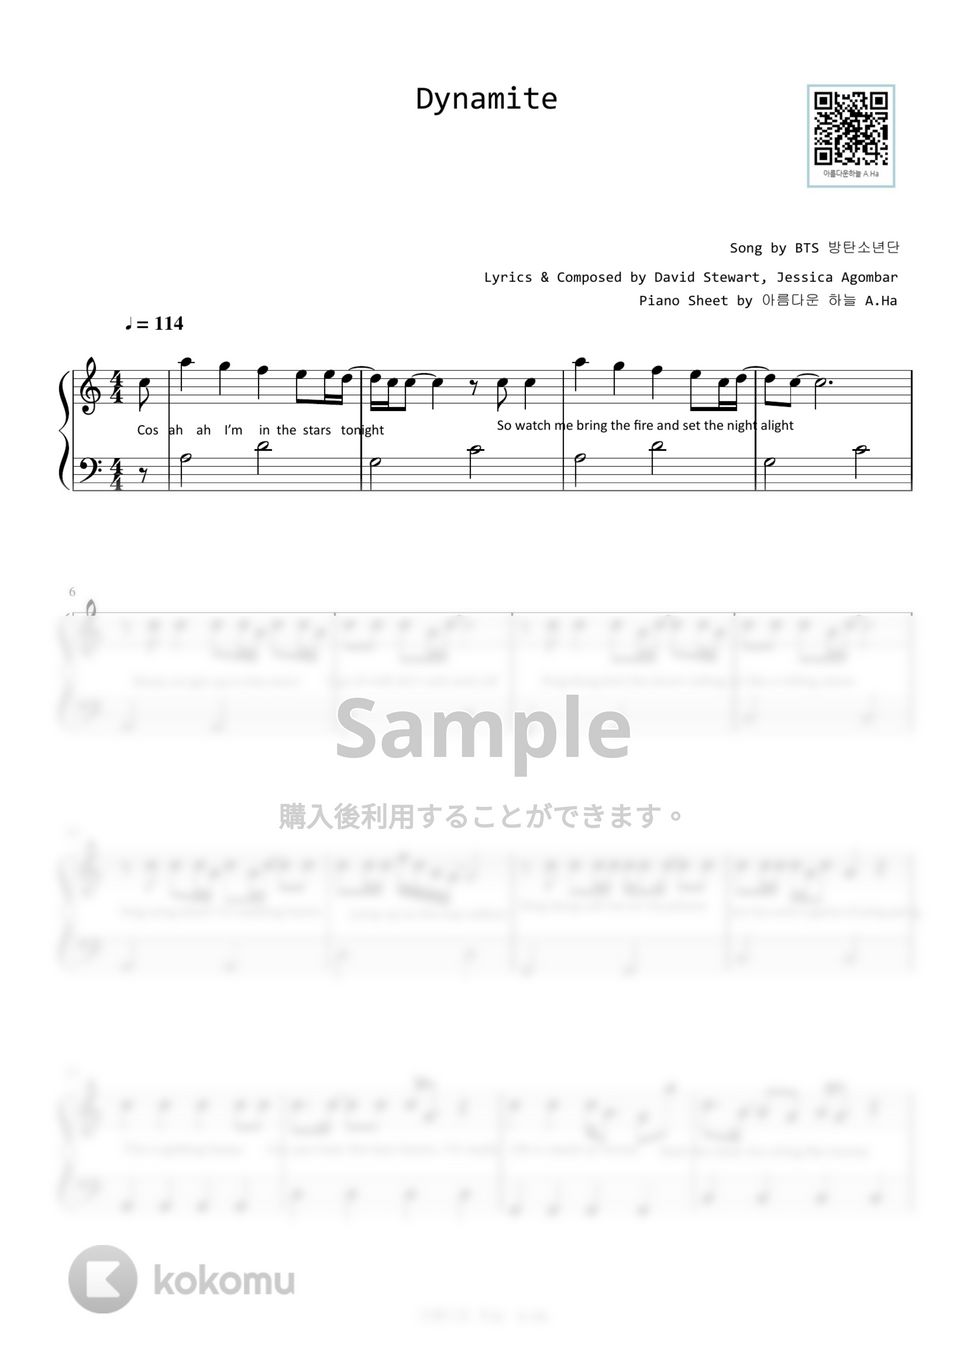 防弾少年団(BTS) - Dynamite (Level 2 - Easy) by A.Ha